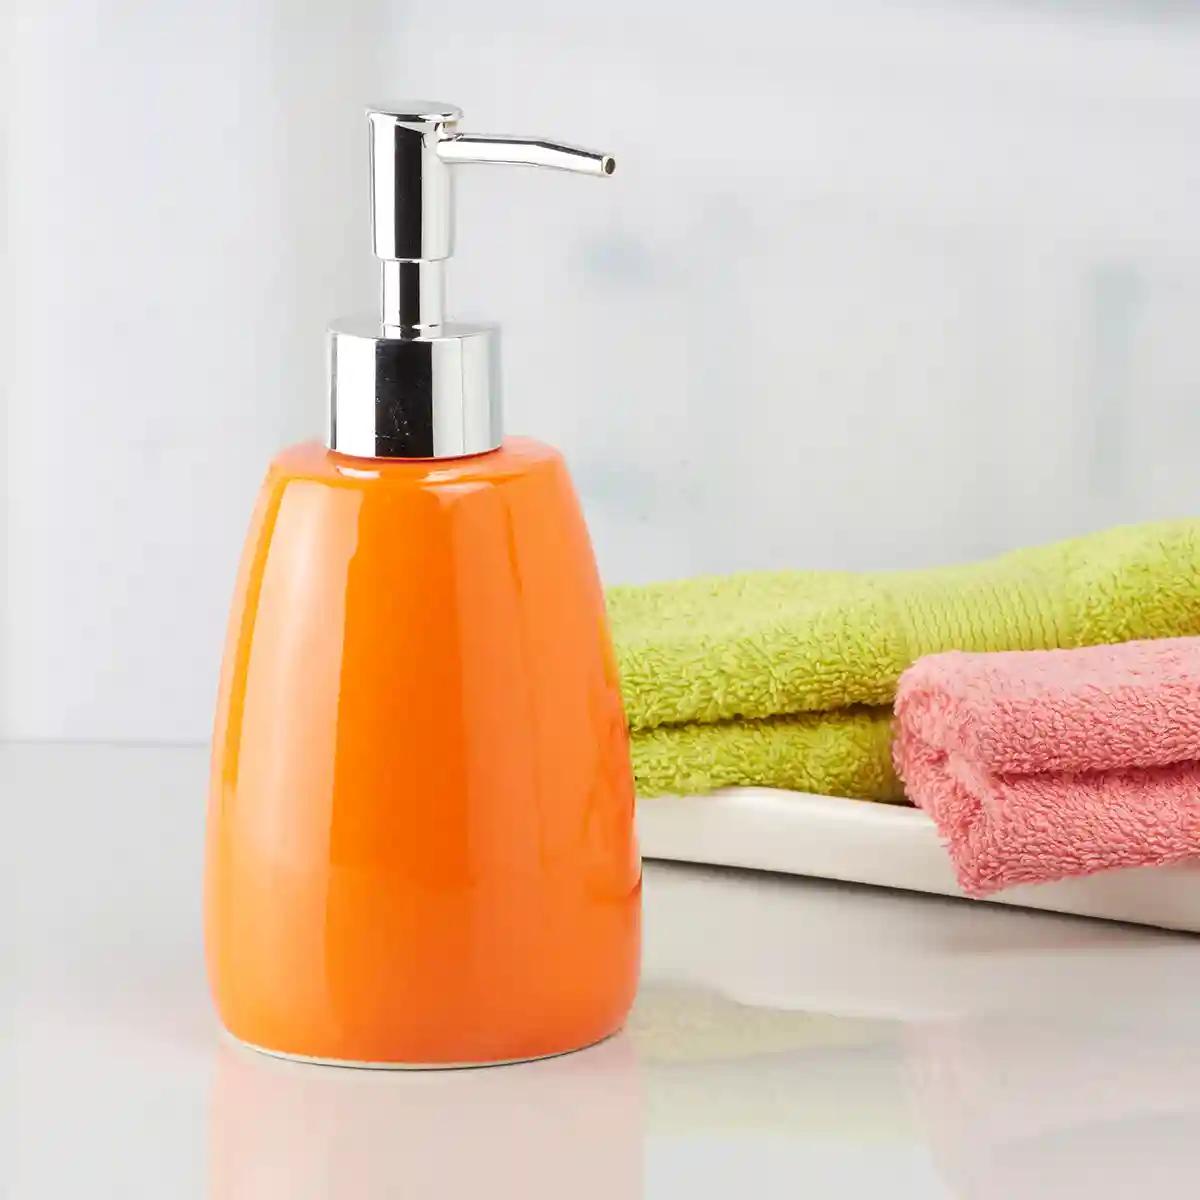 Kookee Ceramic Soap Dispenser for Bathroom handwash, refillable pump bottle for Kitchen hand wash basin, Set of 2 - Orange (5989)